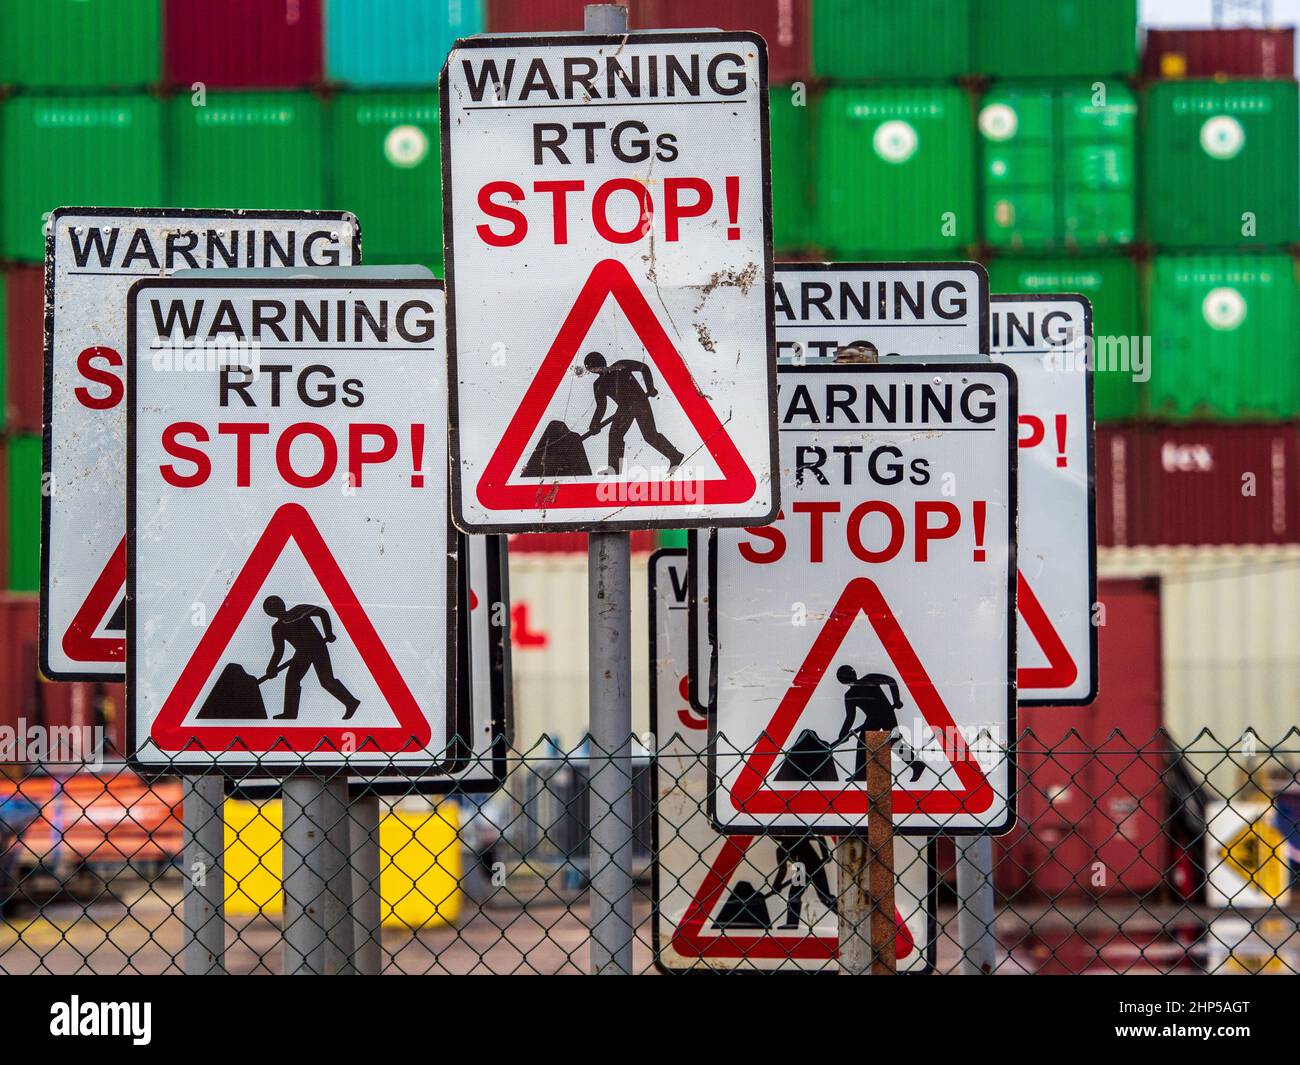 Port Automation - am Felixstowe Hafen unterzeichnete Warnung, dass ferngesteuerte Portalkrane in Betrieb sind. Ferngesteuerte RTG-Portalkrane. Stockfoto